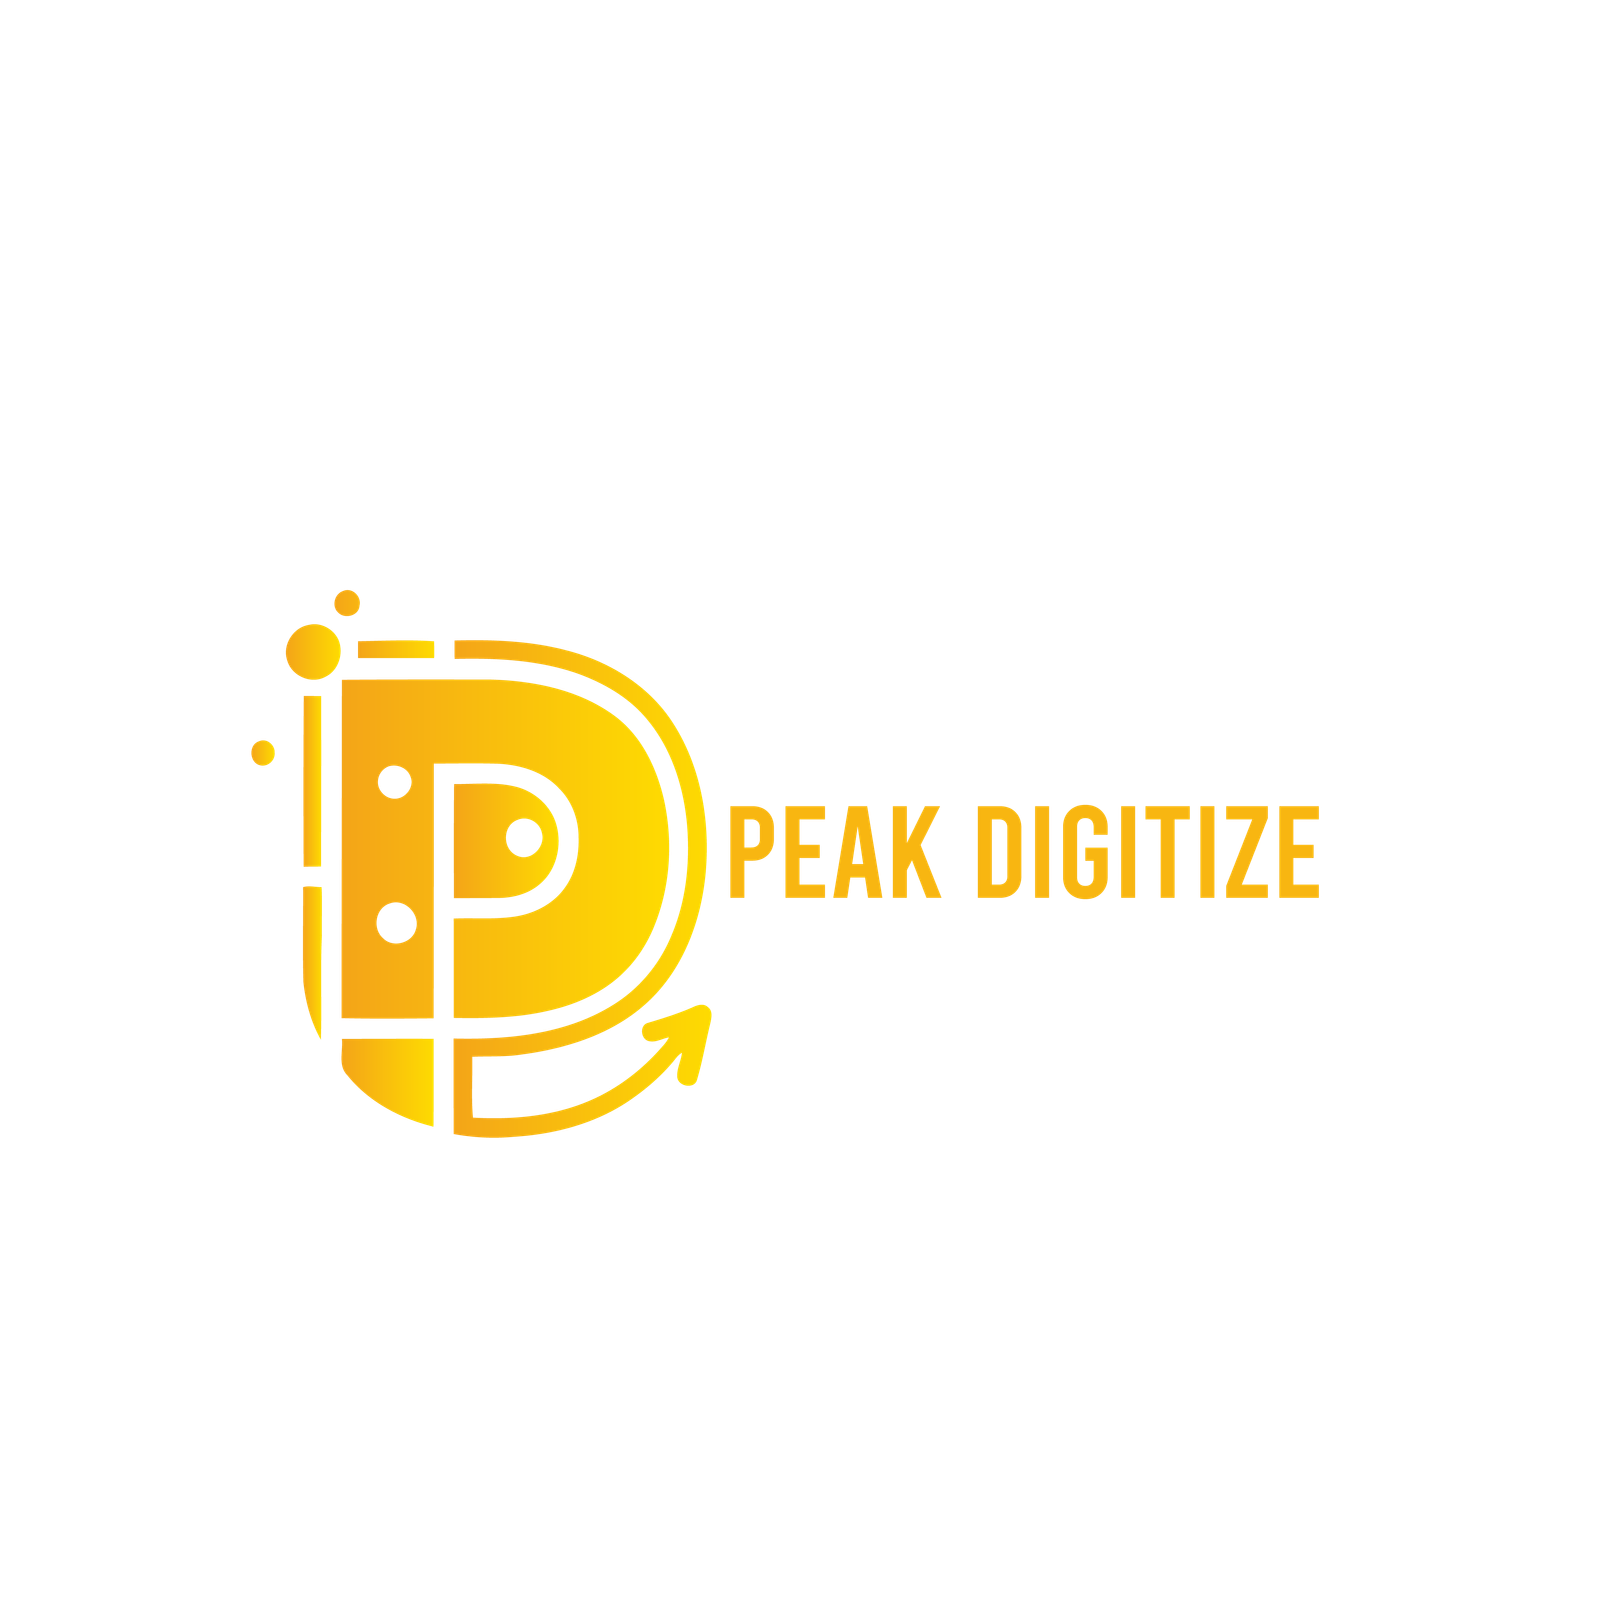 Peak Digitize